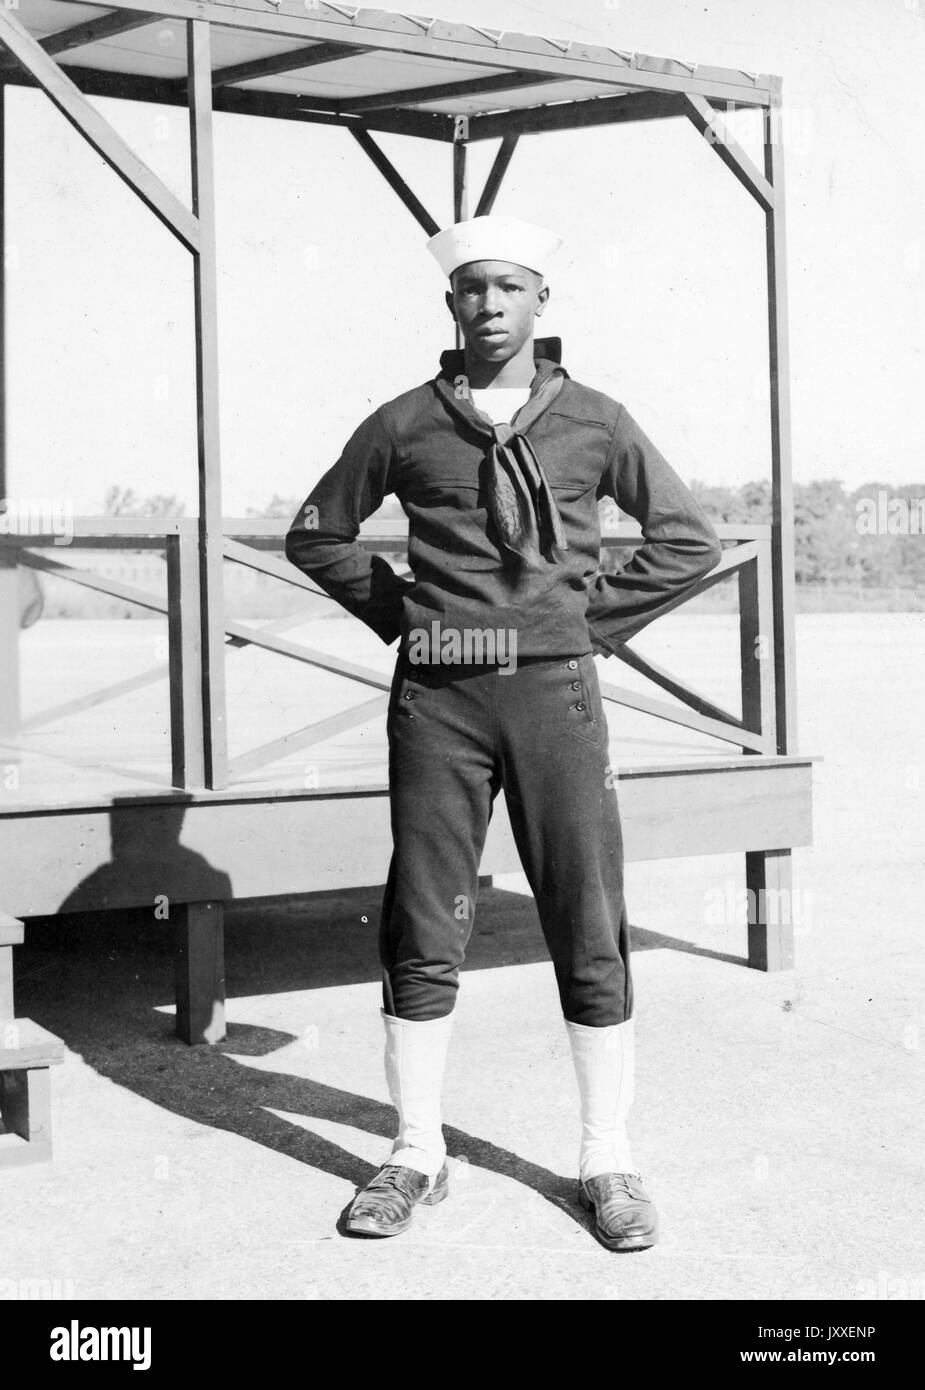 Ritratto di un afro-americano us navy sailor in piedi di fronte ad una piattaforma di legno, indossa un colore scuro sailor uniforme e una luce colorata sailor hat, le braccia sono piegate e le mani dietro la schiena, 1920. Foto Stock